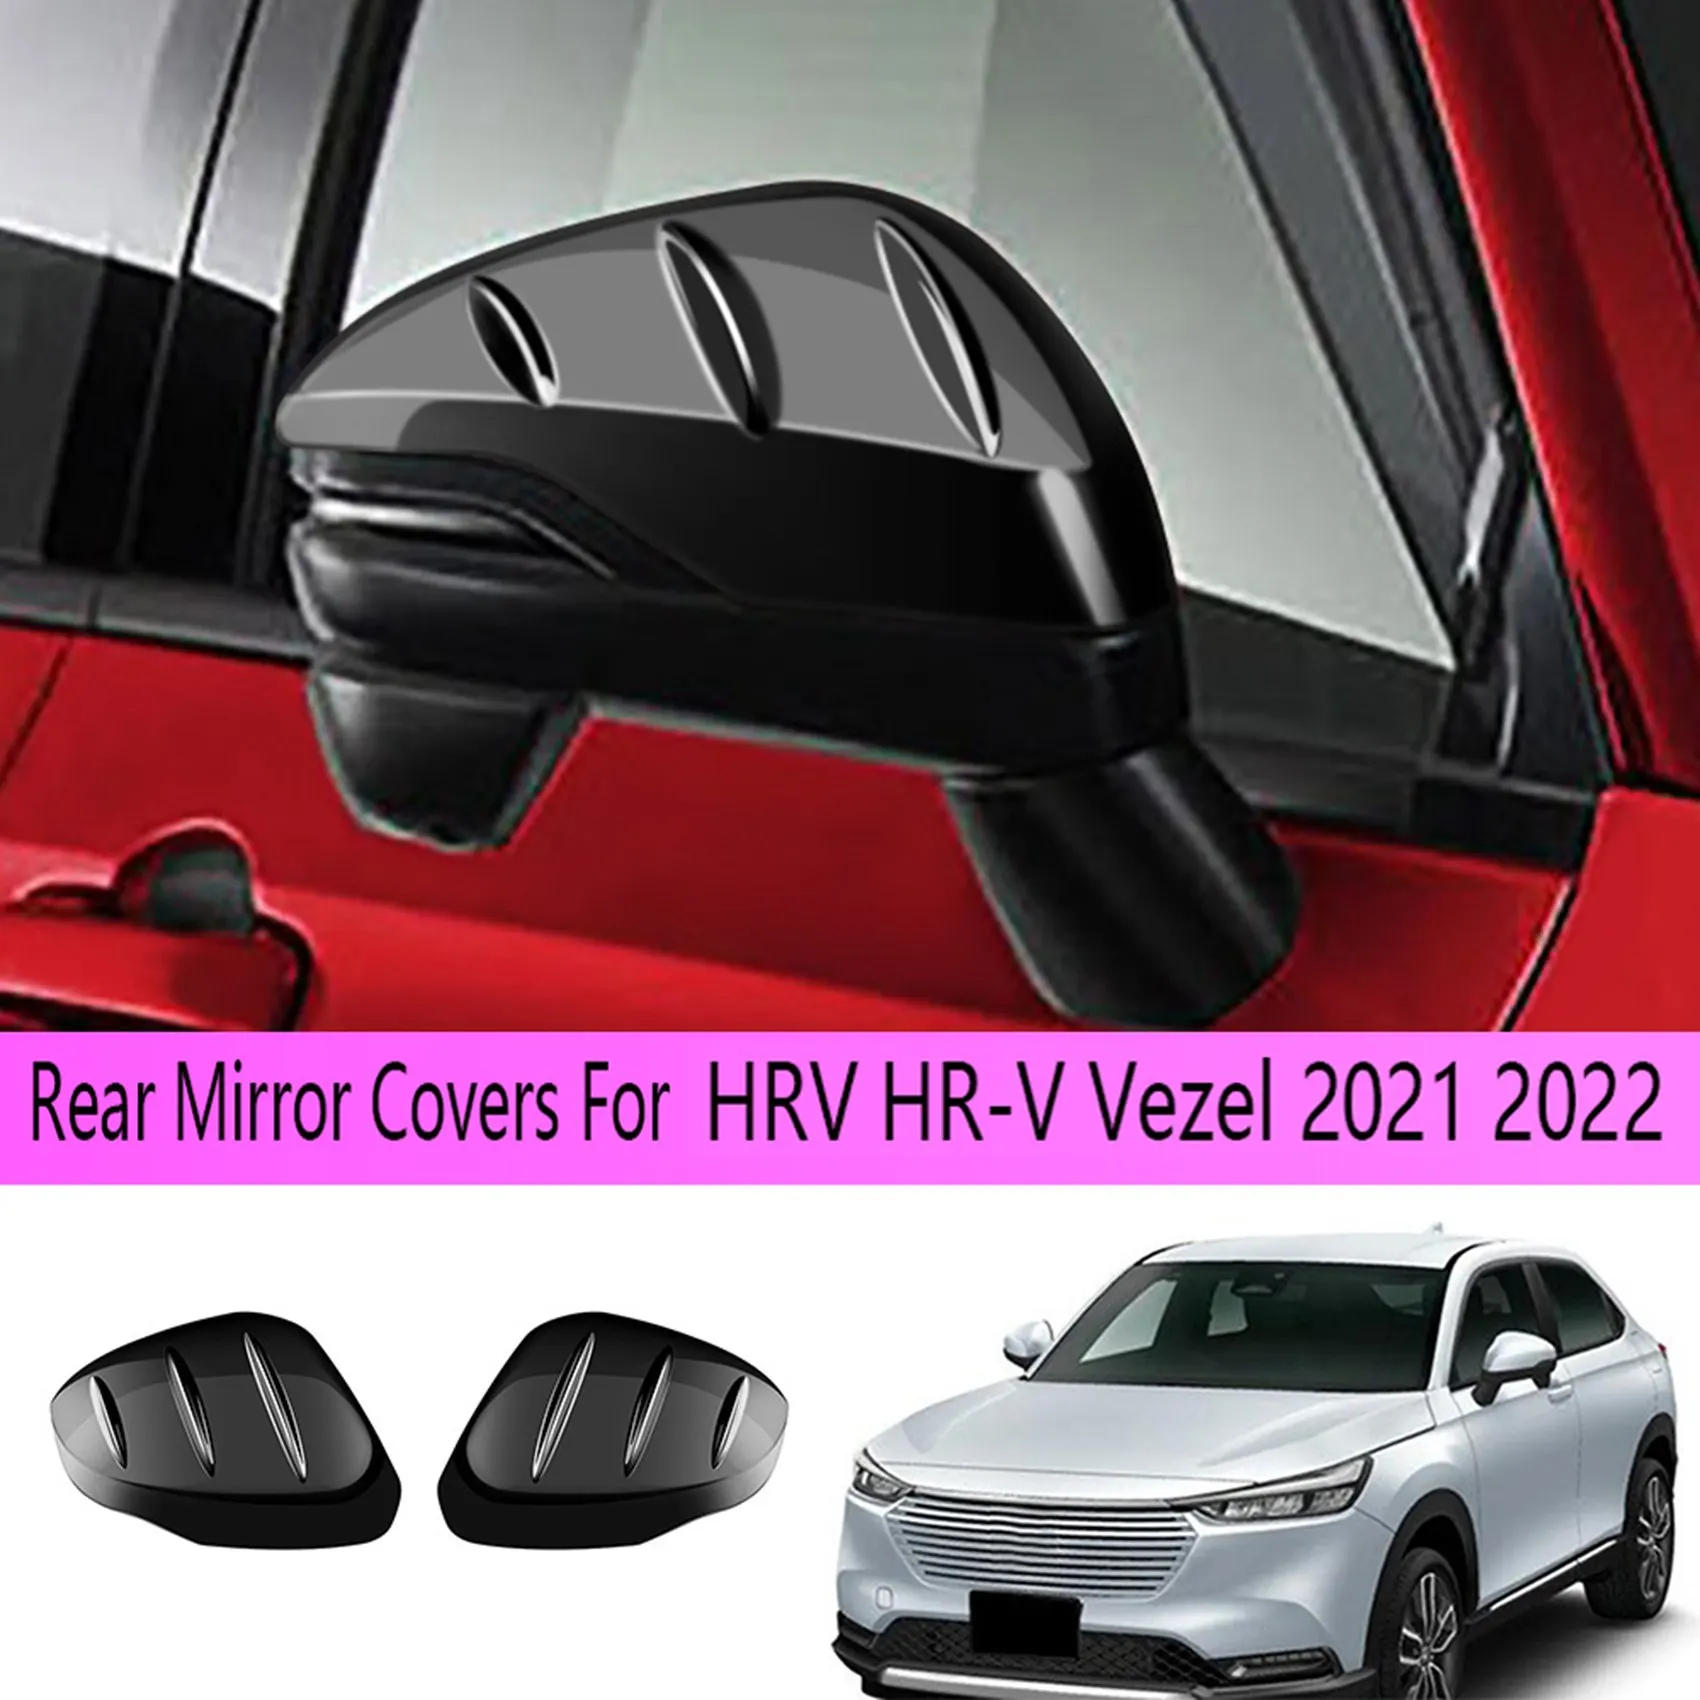 Глянцево-черные чехлы для зеркал заднего вида автомобиля, Накладка на Боковое зеркало двери для Honda HRV HR-V Vezel 2021 2022